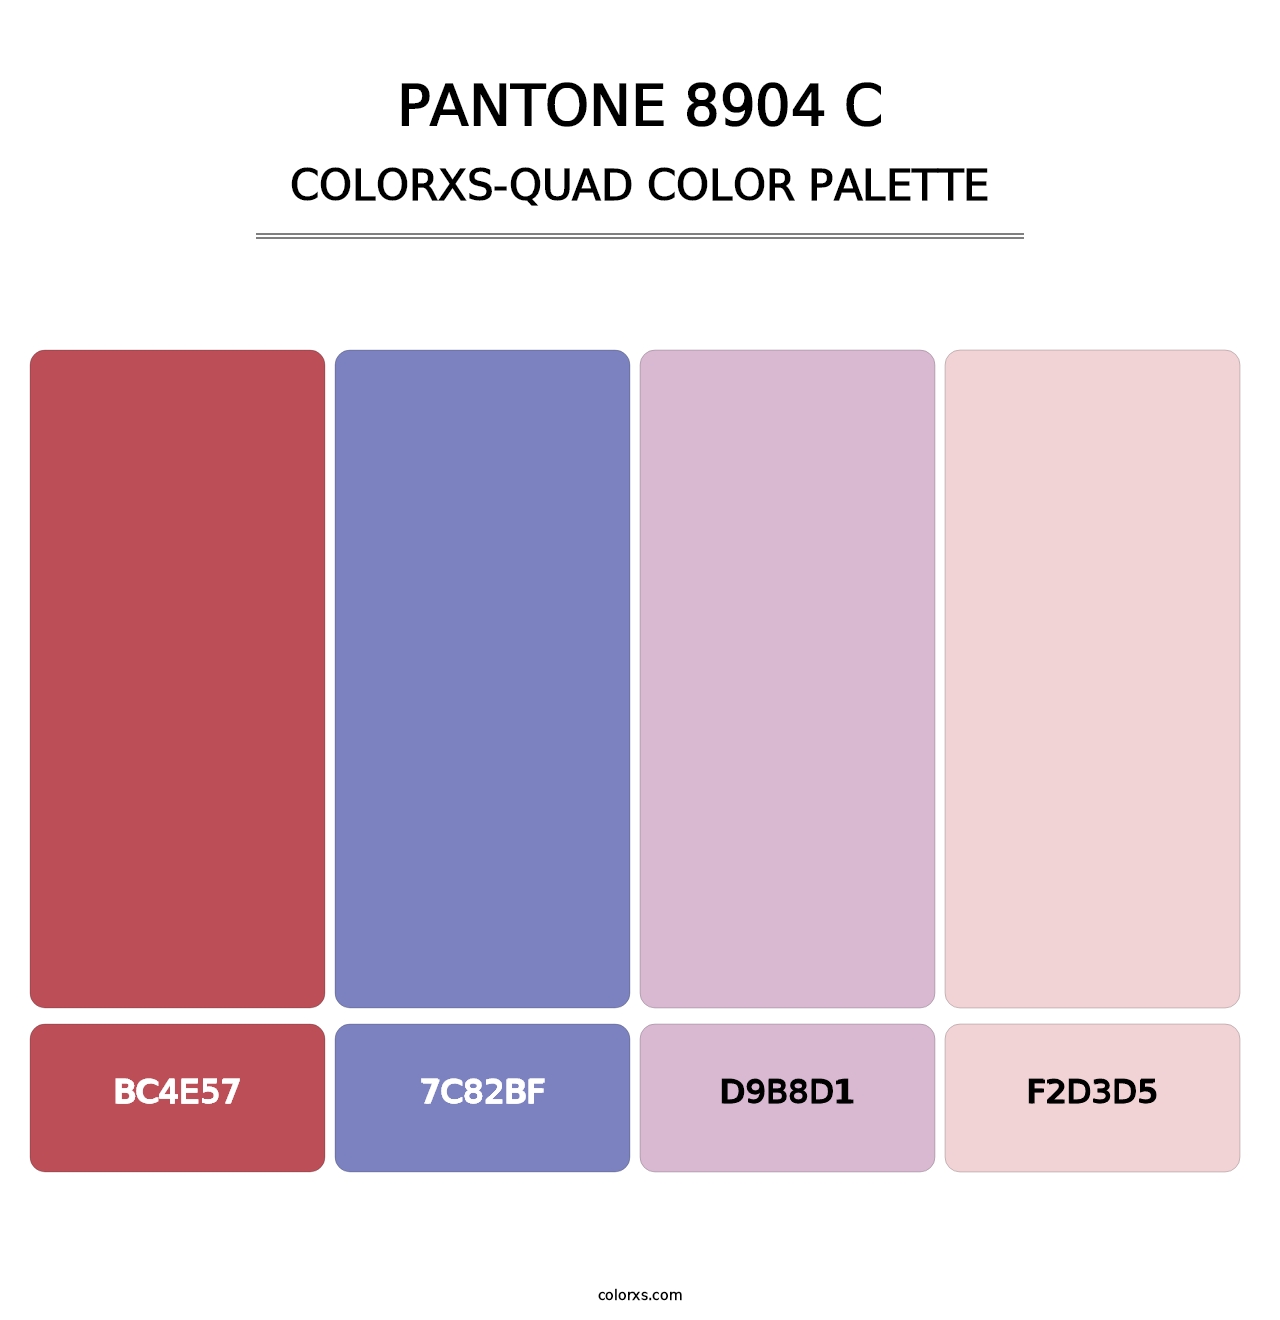 PANTONE 8904 C - Colorxs Quad Palette